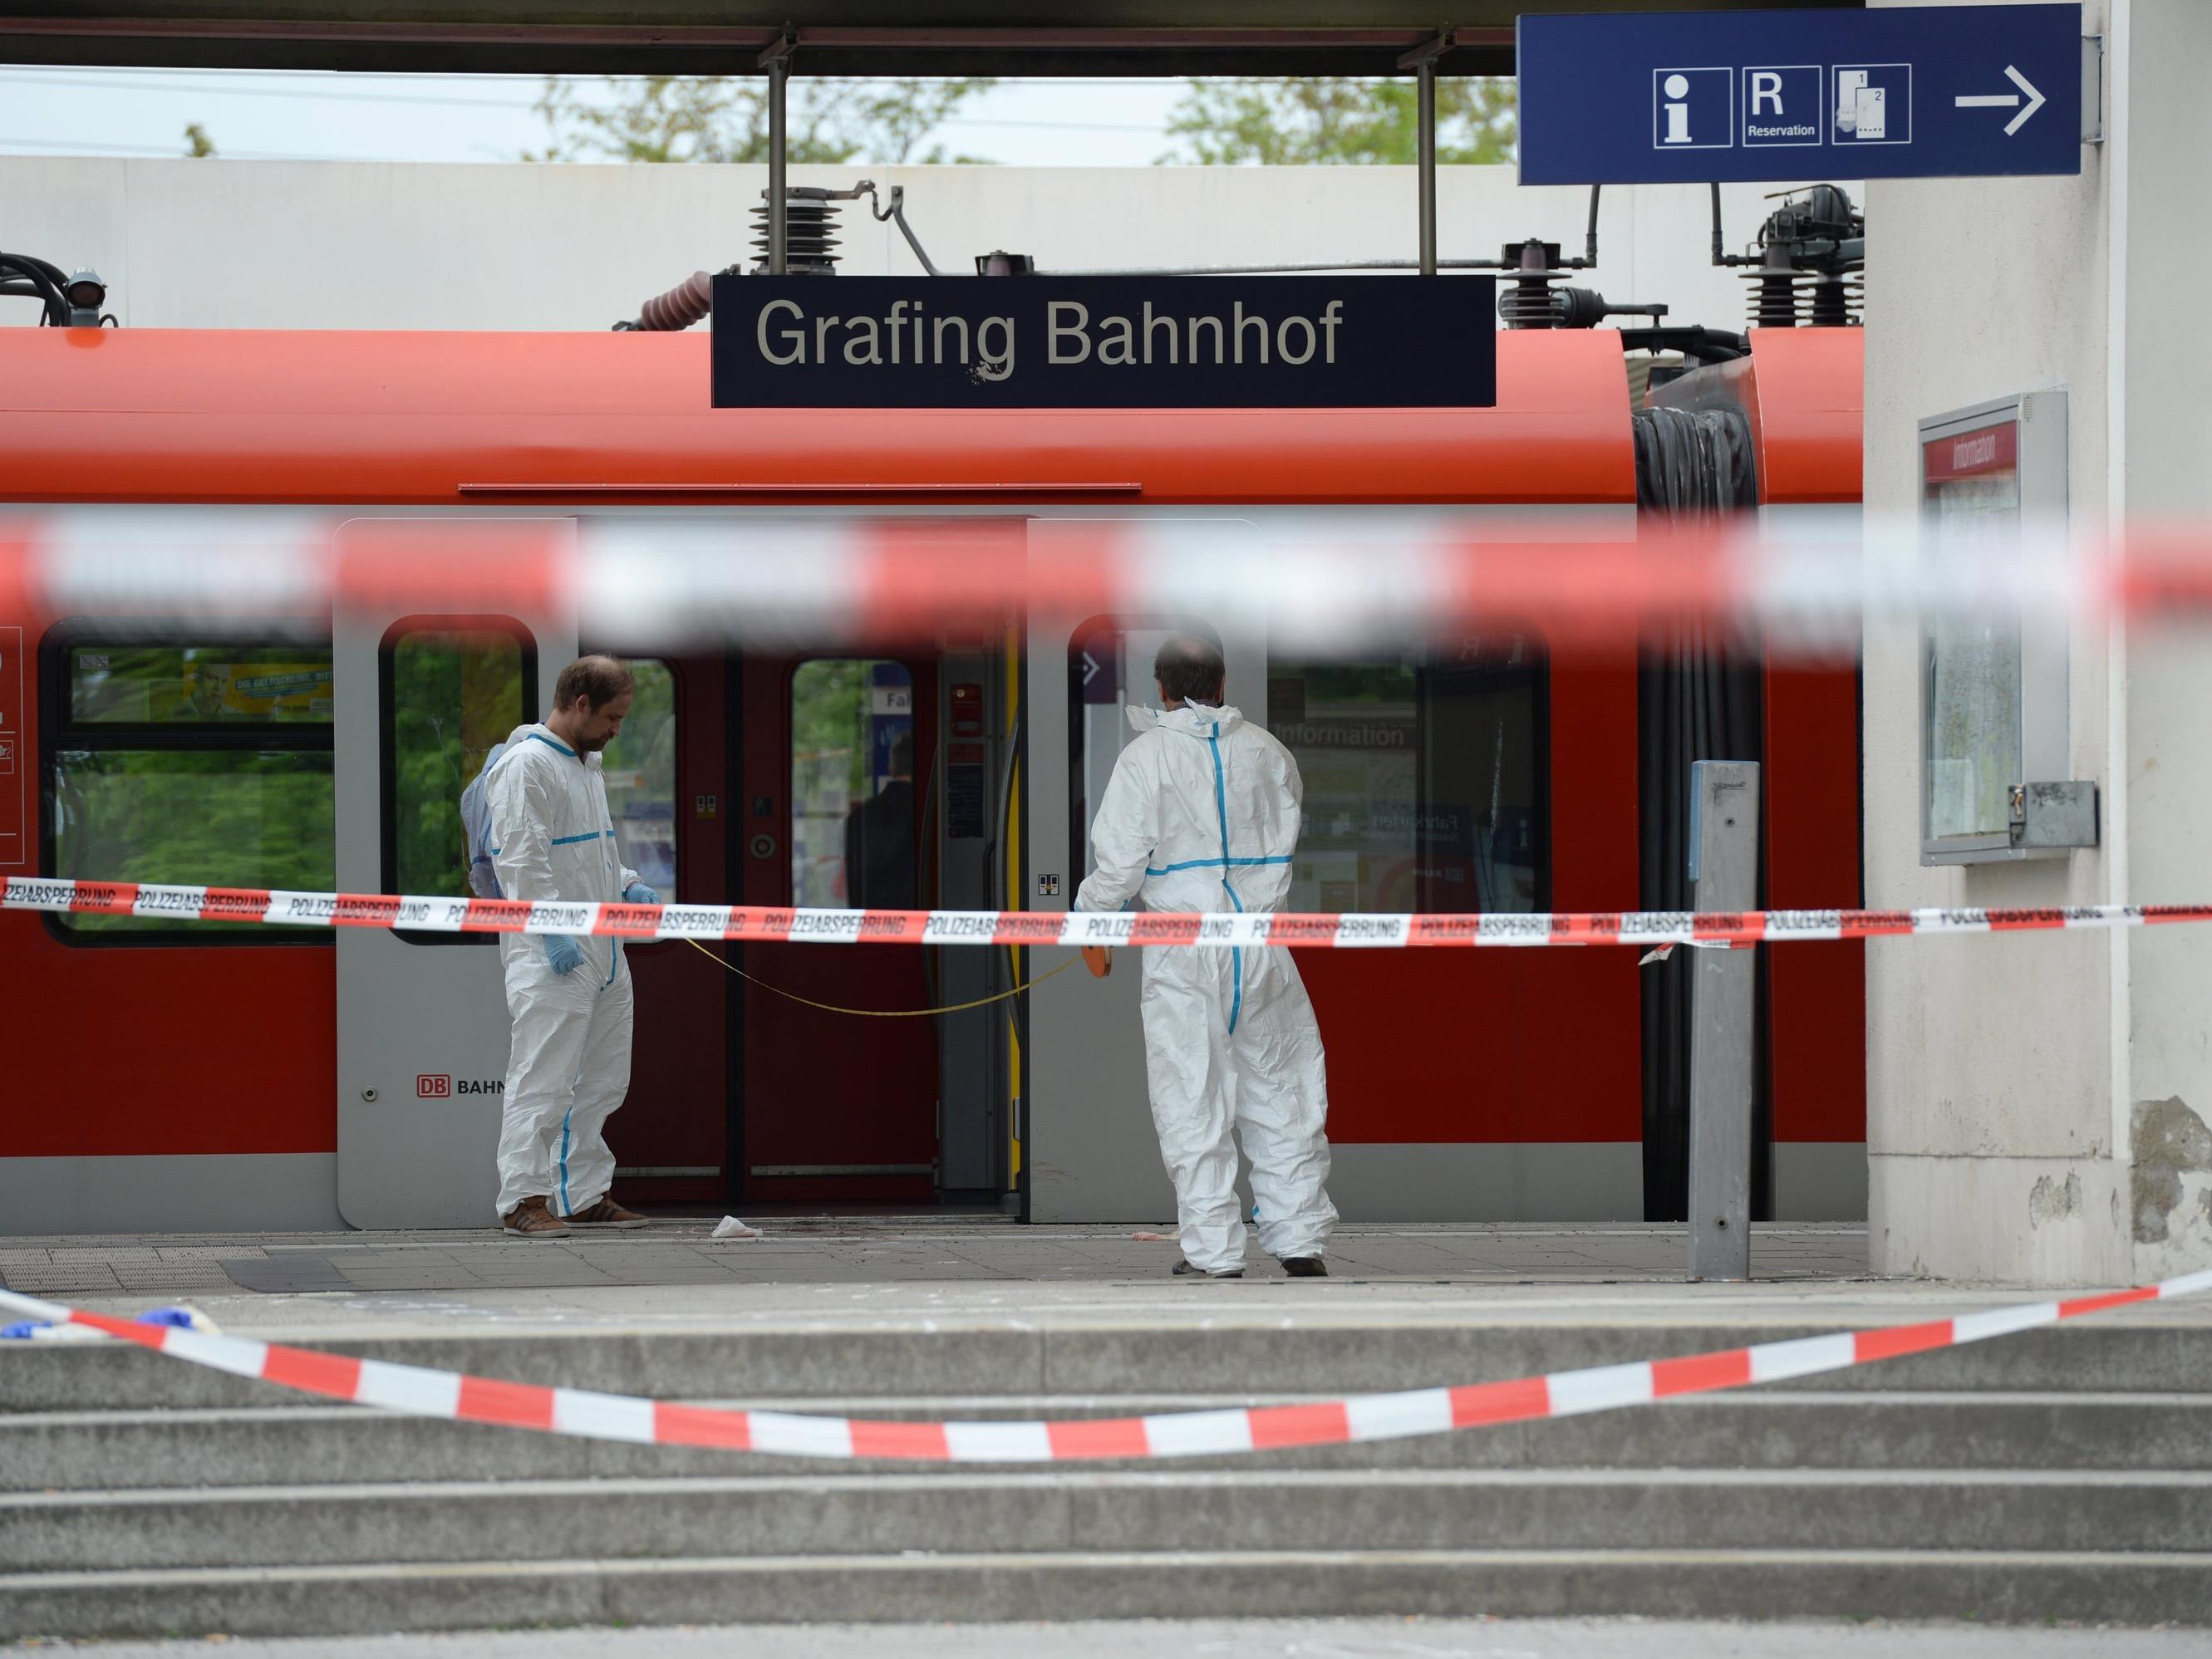 Die Messerattacke am Bahnhof in Grafing, beio der am Morgen eine Person getötet und drei Menschen verletzt wurden, hat wohl keinen islamistischen Hintergrund.